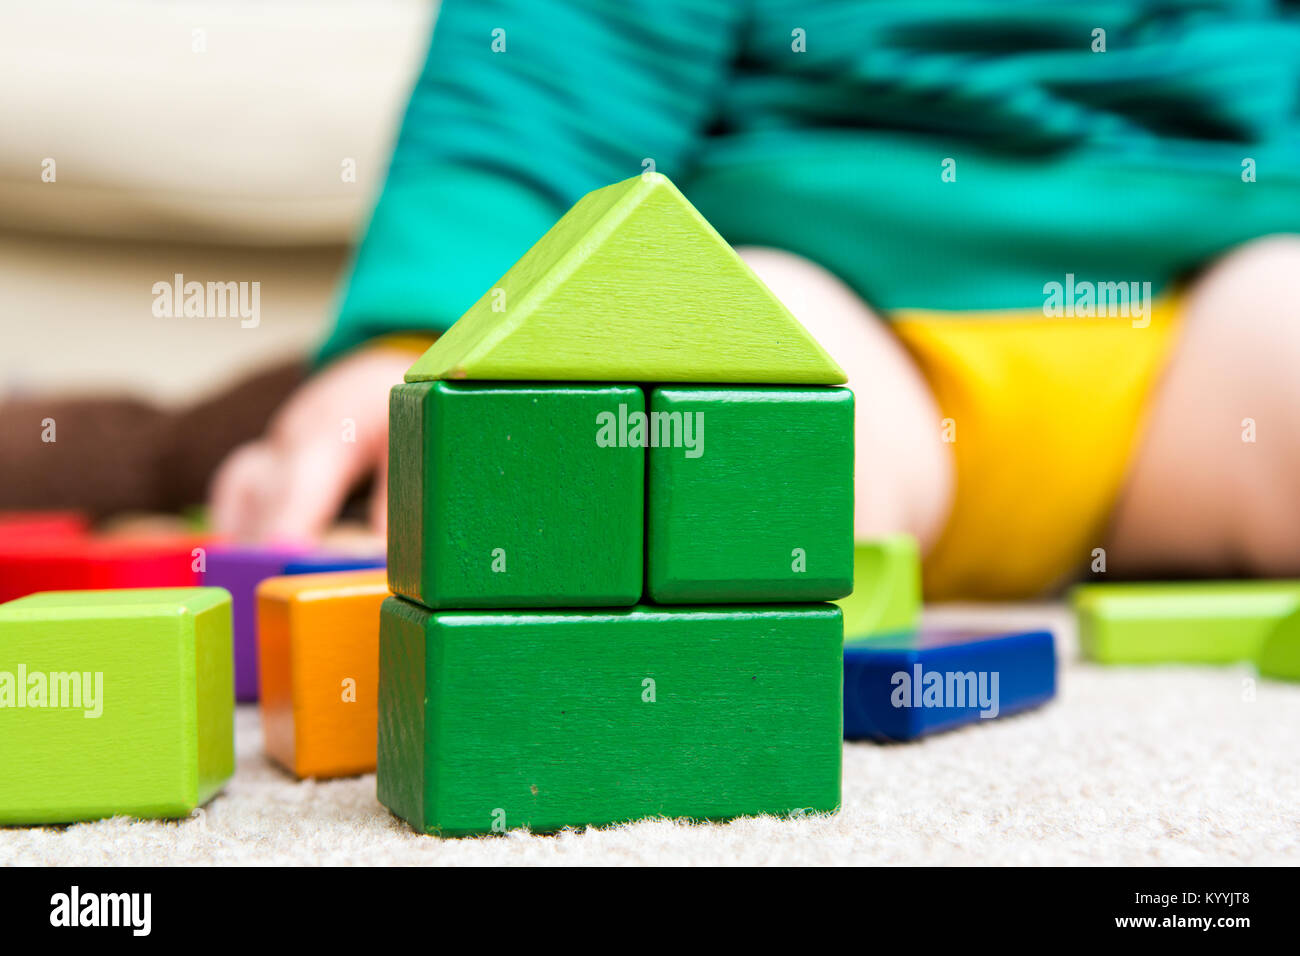 Enfant jouant avec des blocs de construction de l'apprentissage de nouvelles compétences, jeu éducatif en utilisant des jouets pour apprendre à la maison avec les parents Banque D'Images